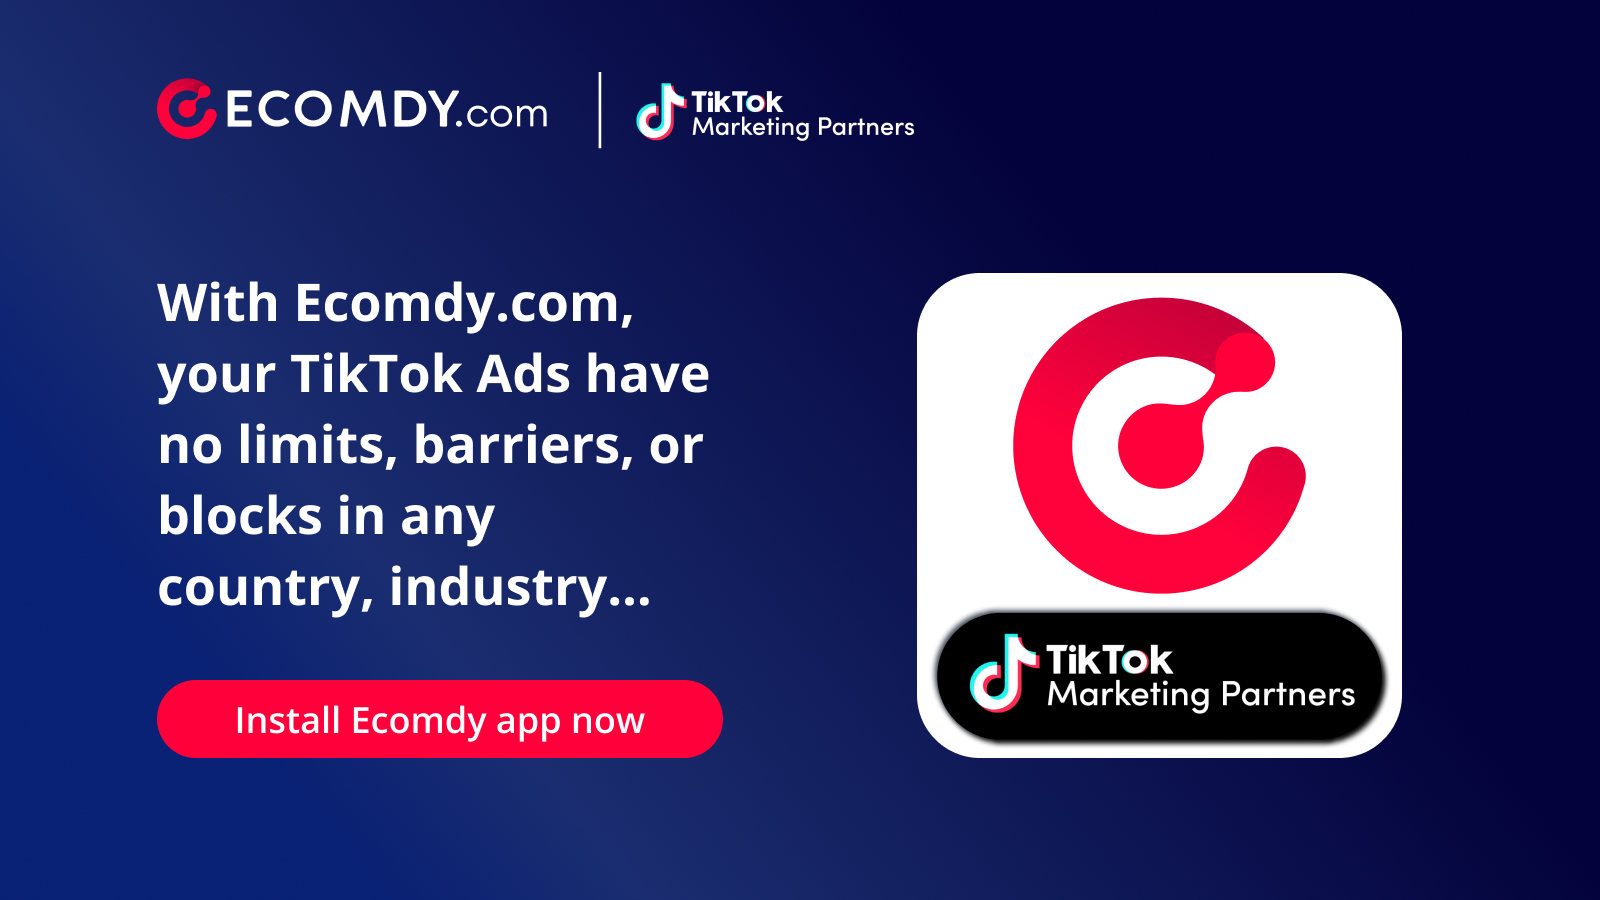 Ecomdy.com - Officiel TikTok Marketing Partner